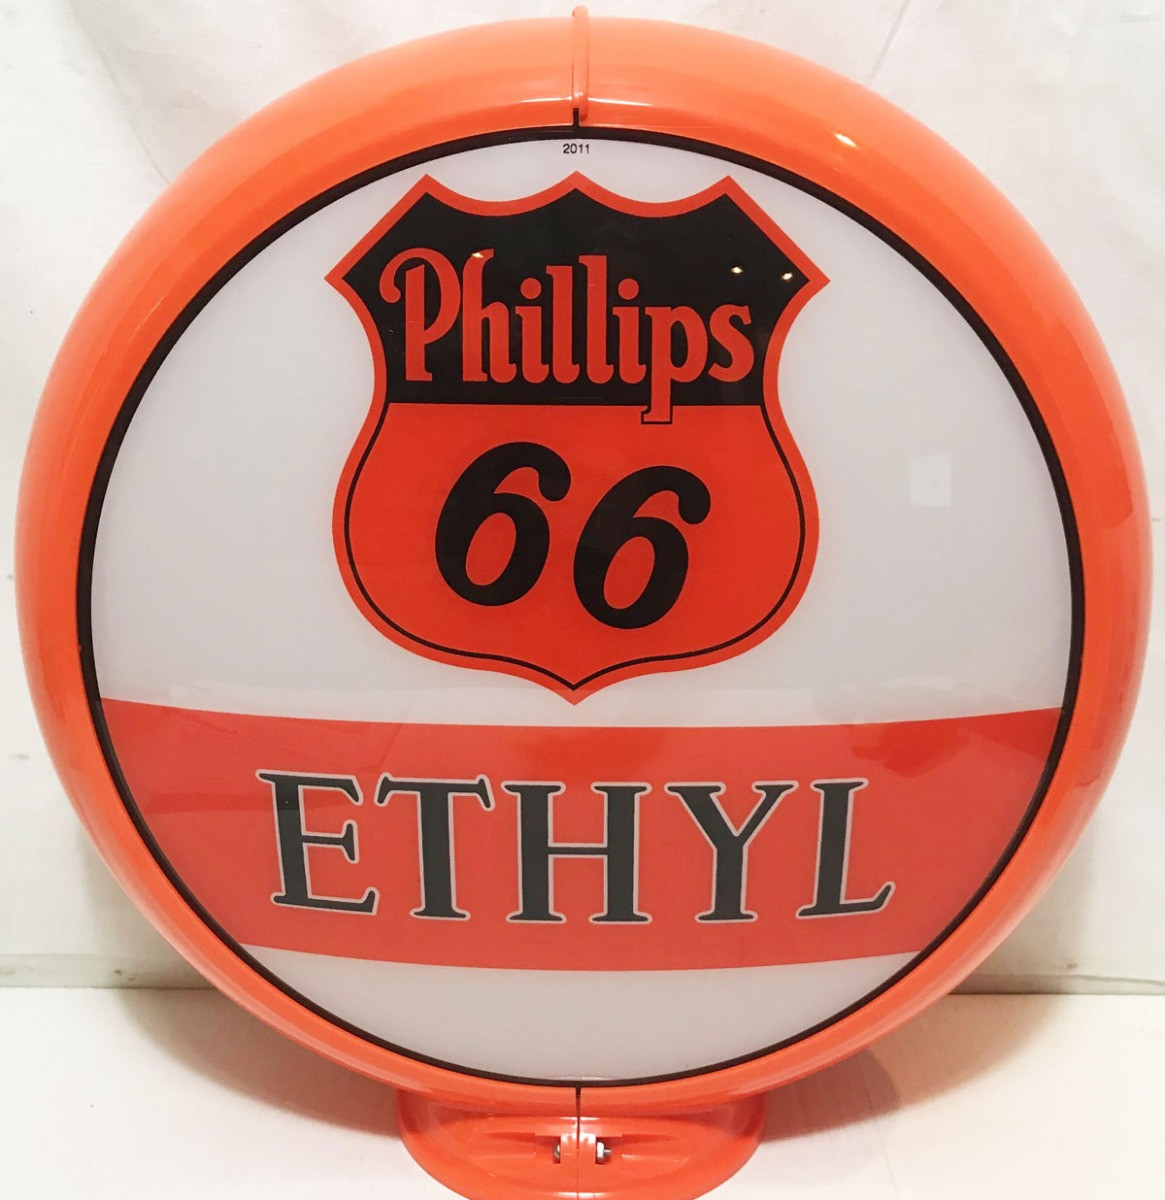 Phillips 66 Ethyl (V2) Gasoline Benzinepomp Bol